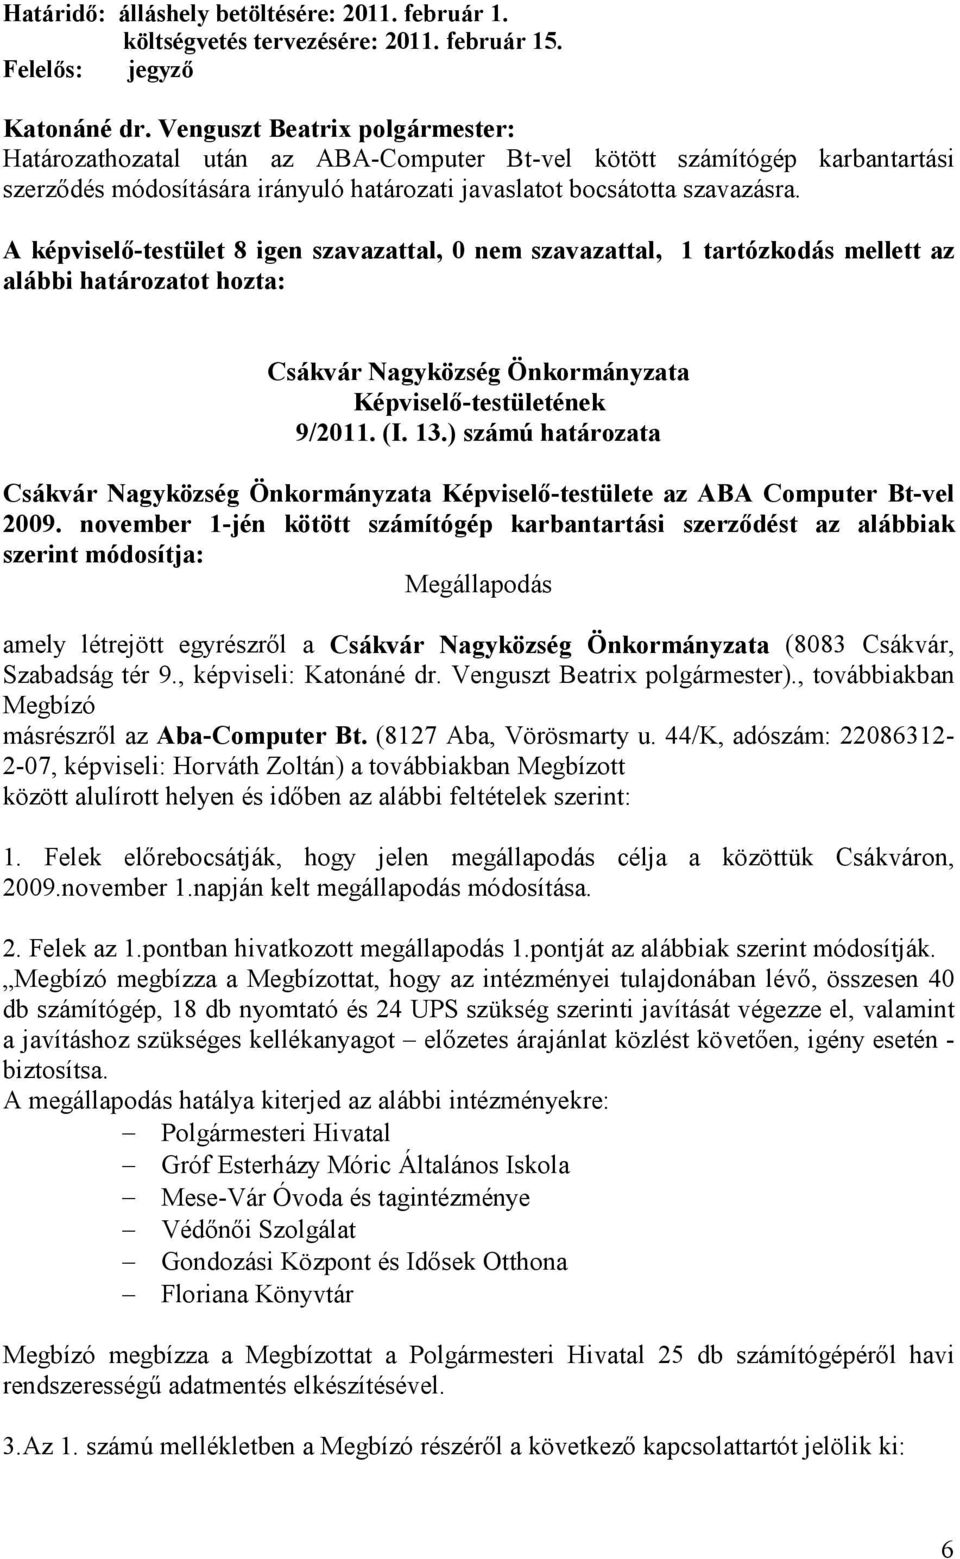 A képviselı-testület 8 igen szavazattal, 0 nem szavazattal, 1 tartózkodás mellett az alábbi határozatot hozta: 9/2011. (I. 13.) számú határozata Képviselı-testülete az ABA Computer Bt-vel 2009.